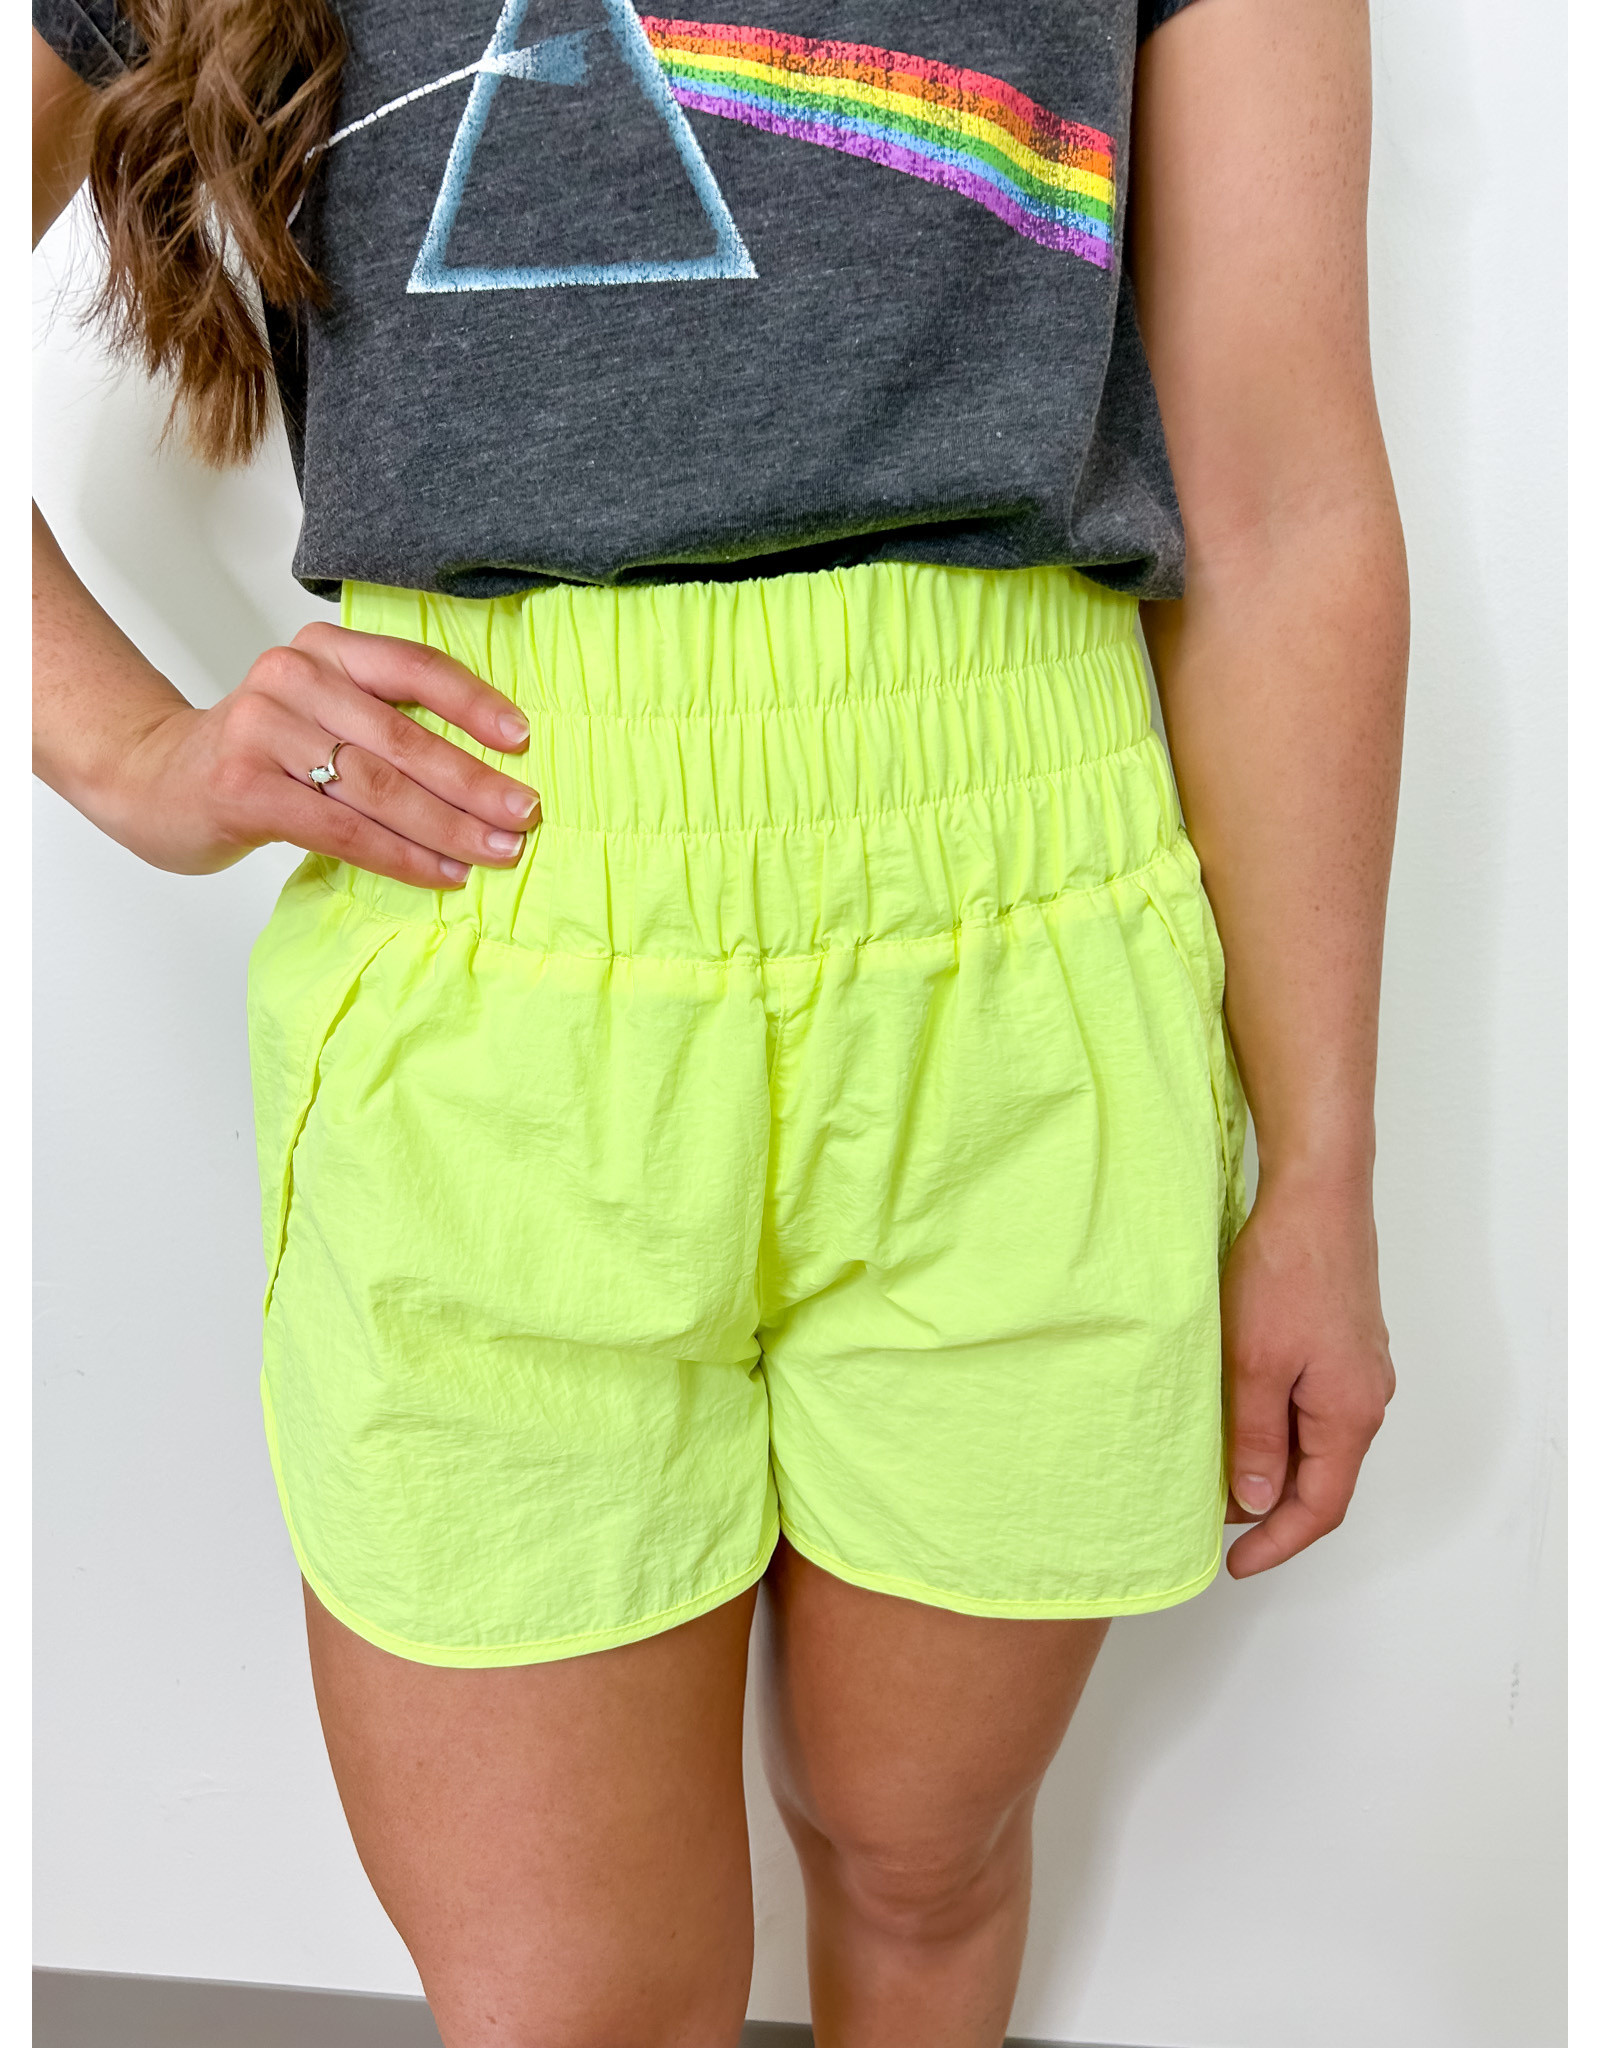 Windbreaker Shorts w/ Briefs - Neon Lime